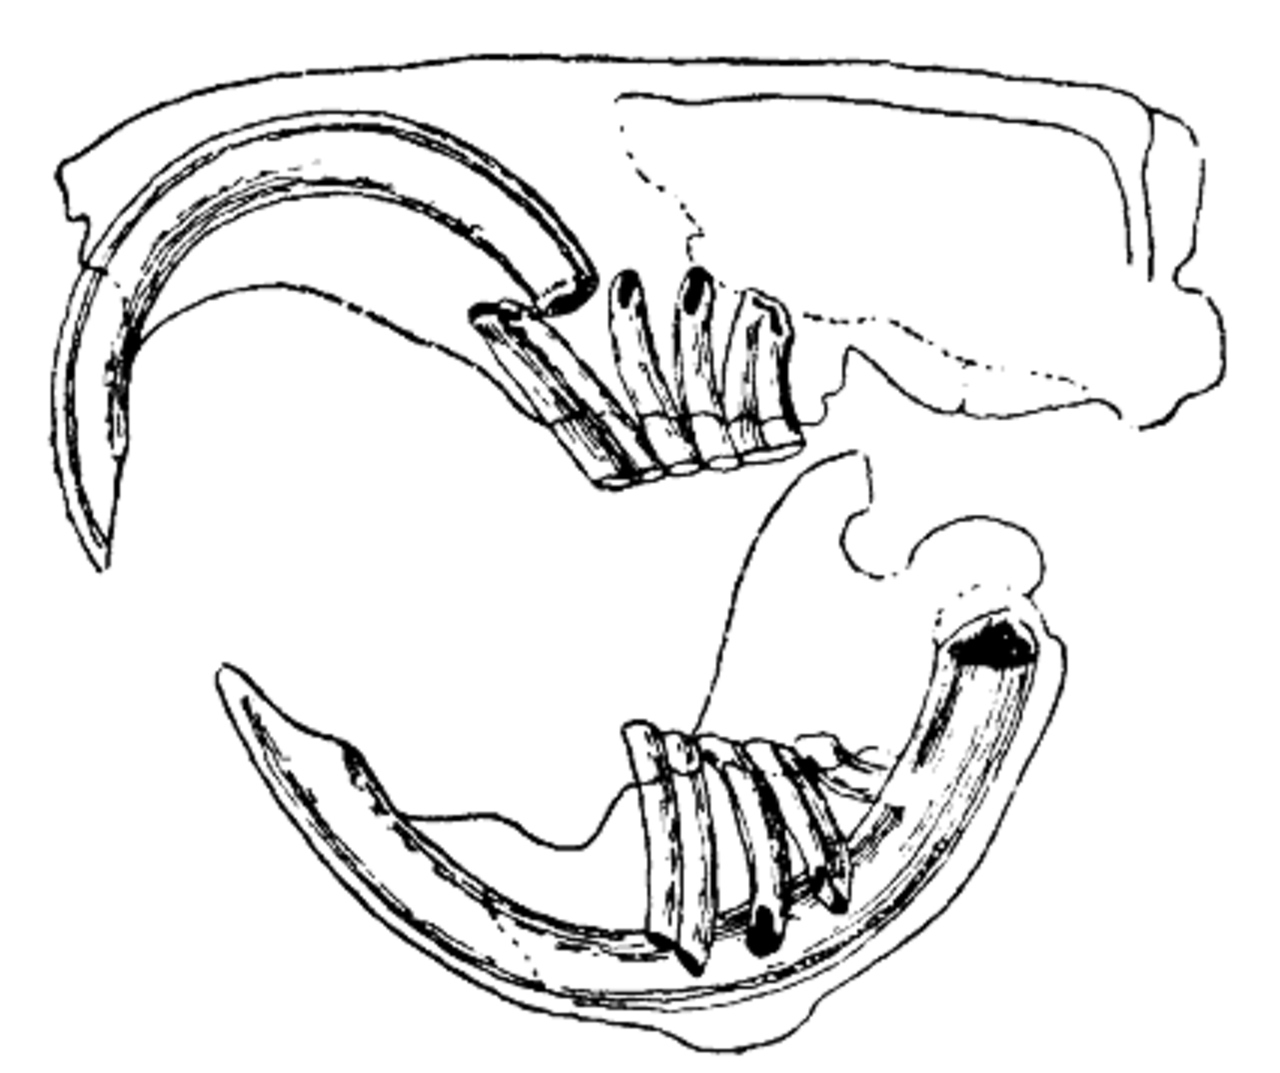 Дифференциация зубов млекопитающих. Строение зубов грызунов и зайцеобразных. Строение челюсти зайцеобразных. Скелет челюсти зайцеобразных. Зайцеобразные зубная система.